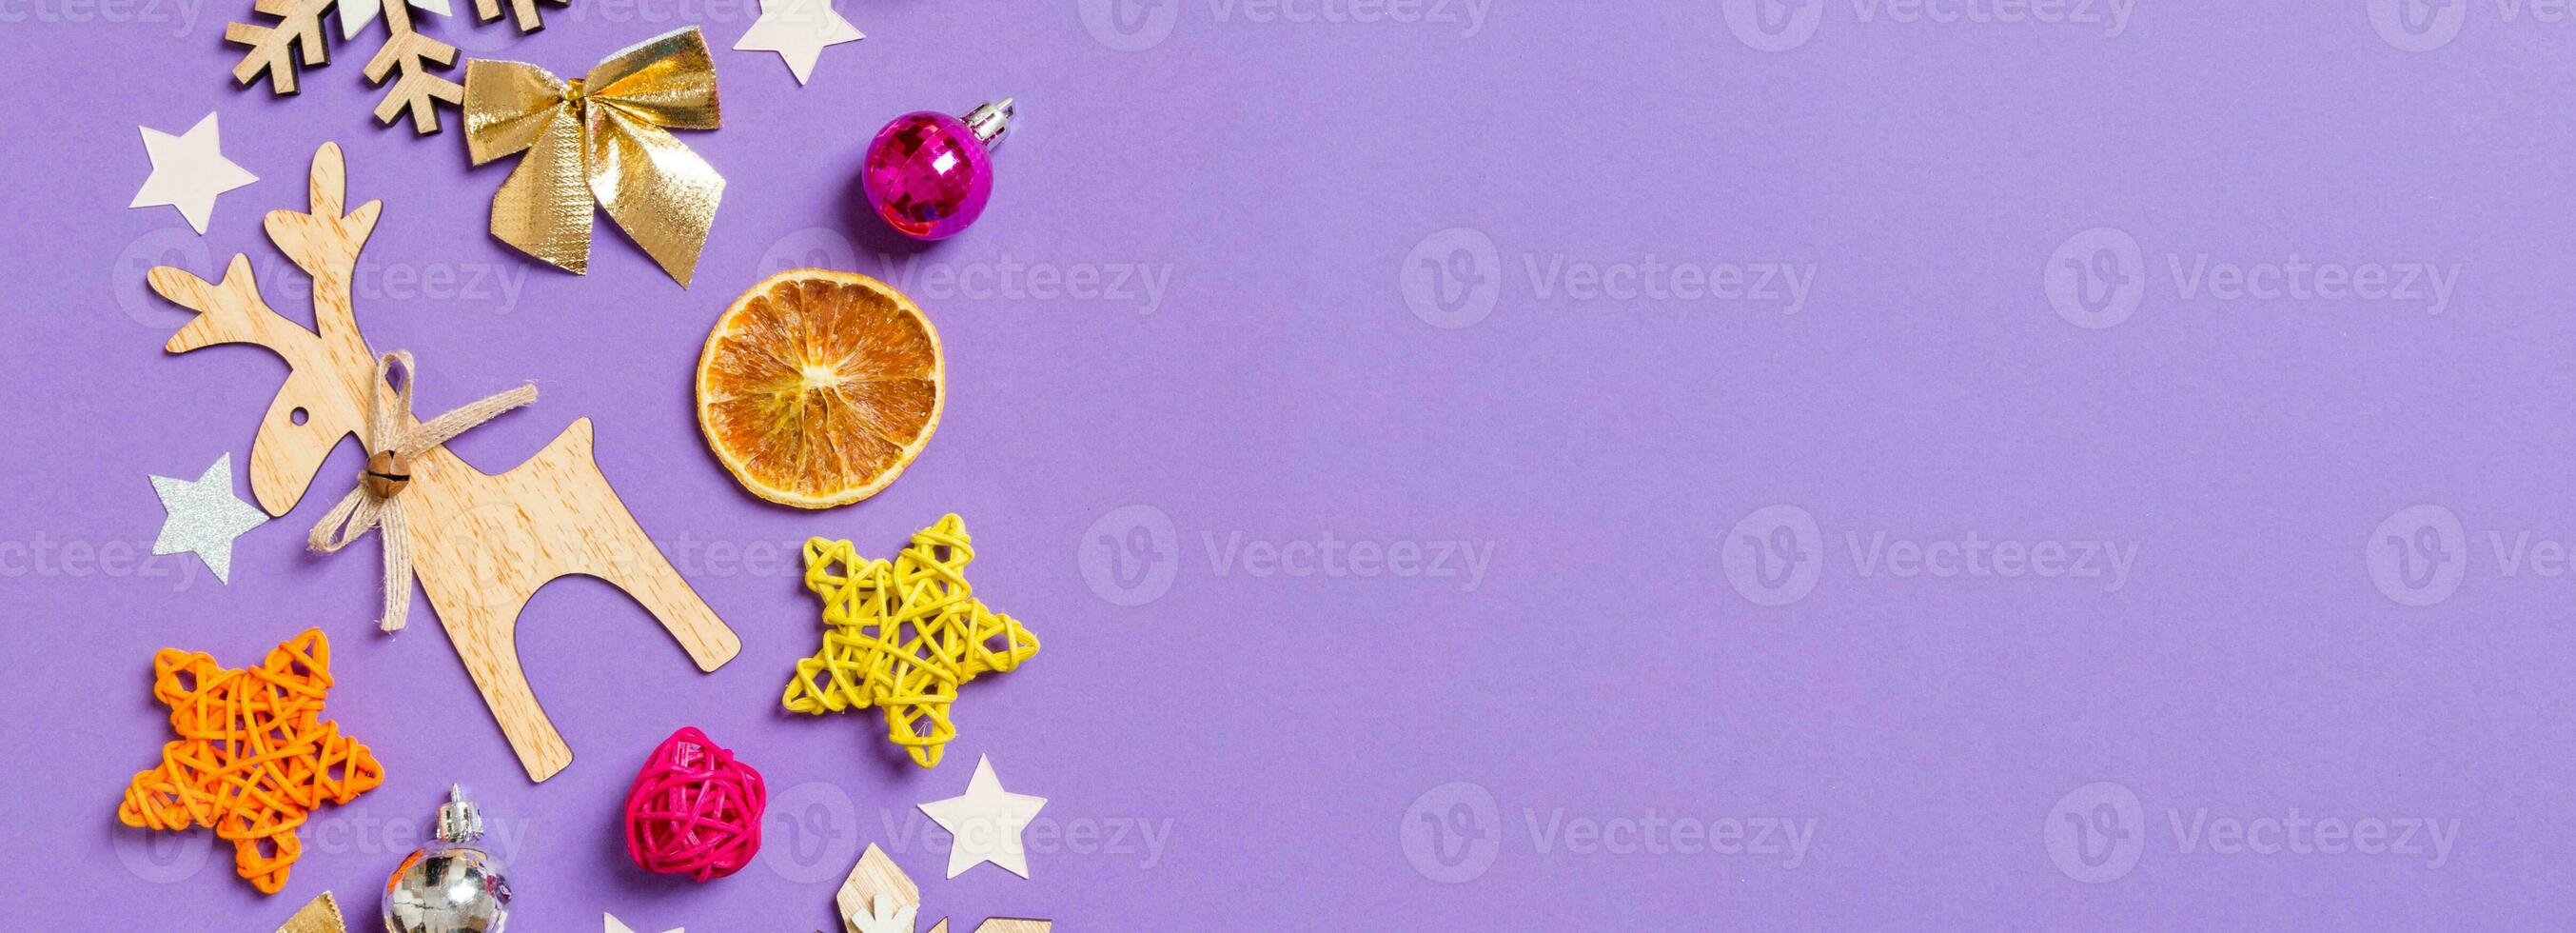 topp se baner av ny år leksaker och dekorationer på lila bakgrund. jul tid begrepp med tömma Plats för din design foto